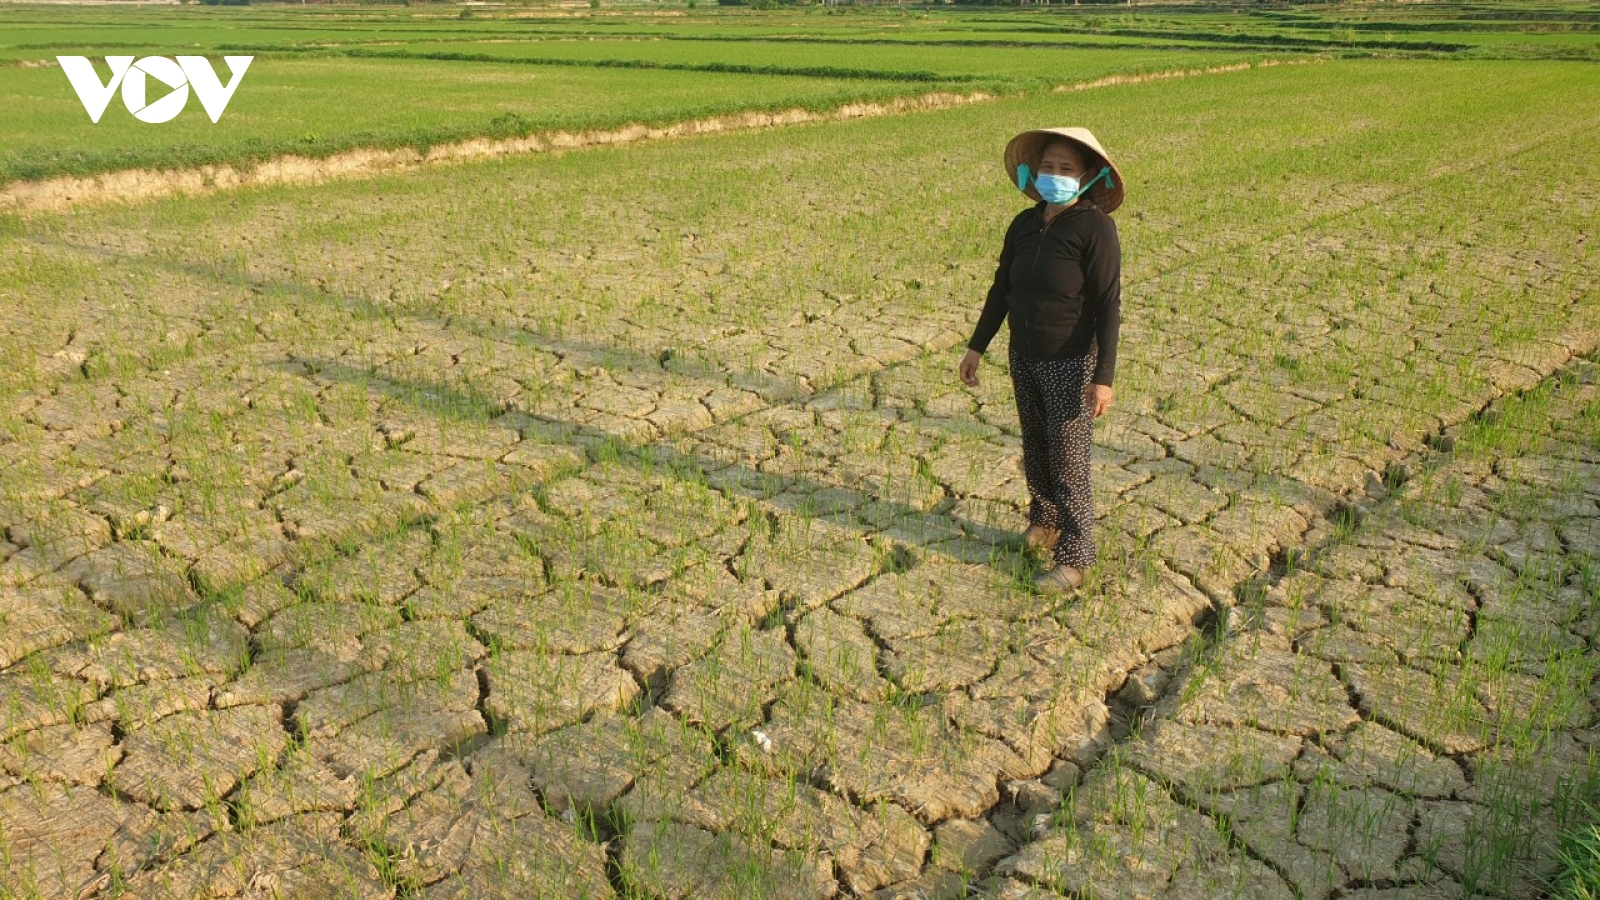 Quảng Nam đối diện với nguy cơ mất mùa do thiếu nước, hạn mặn